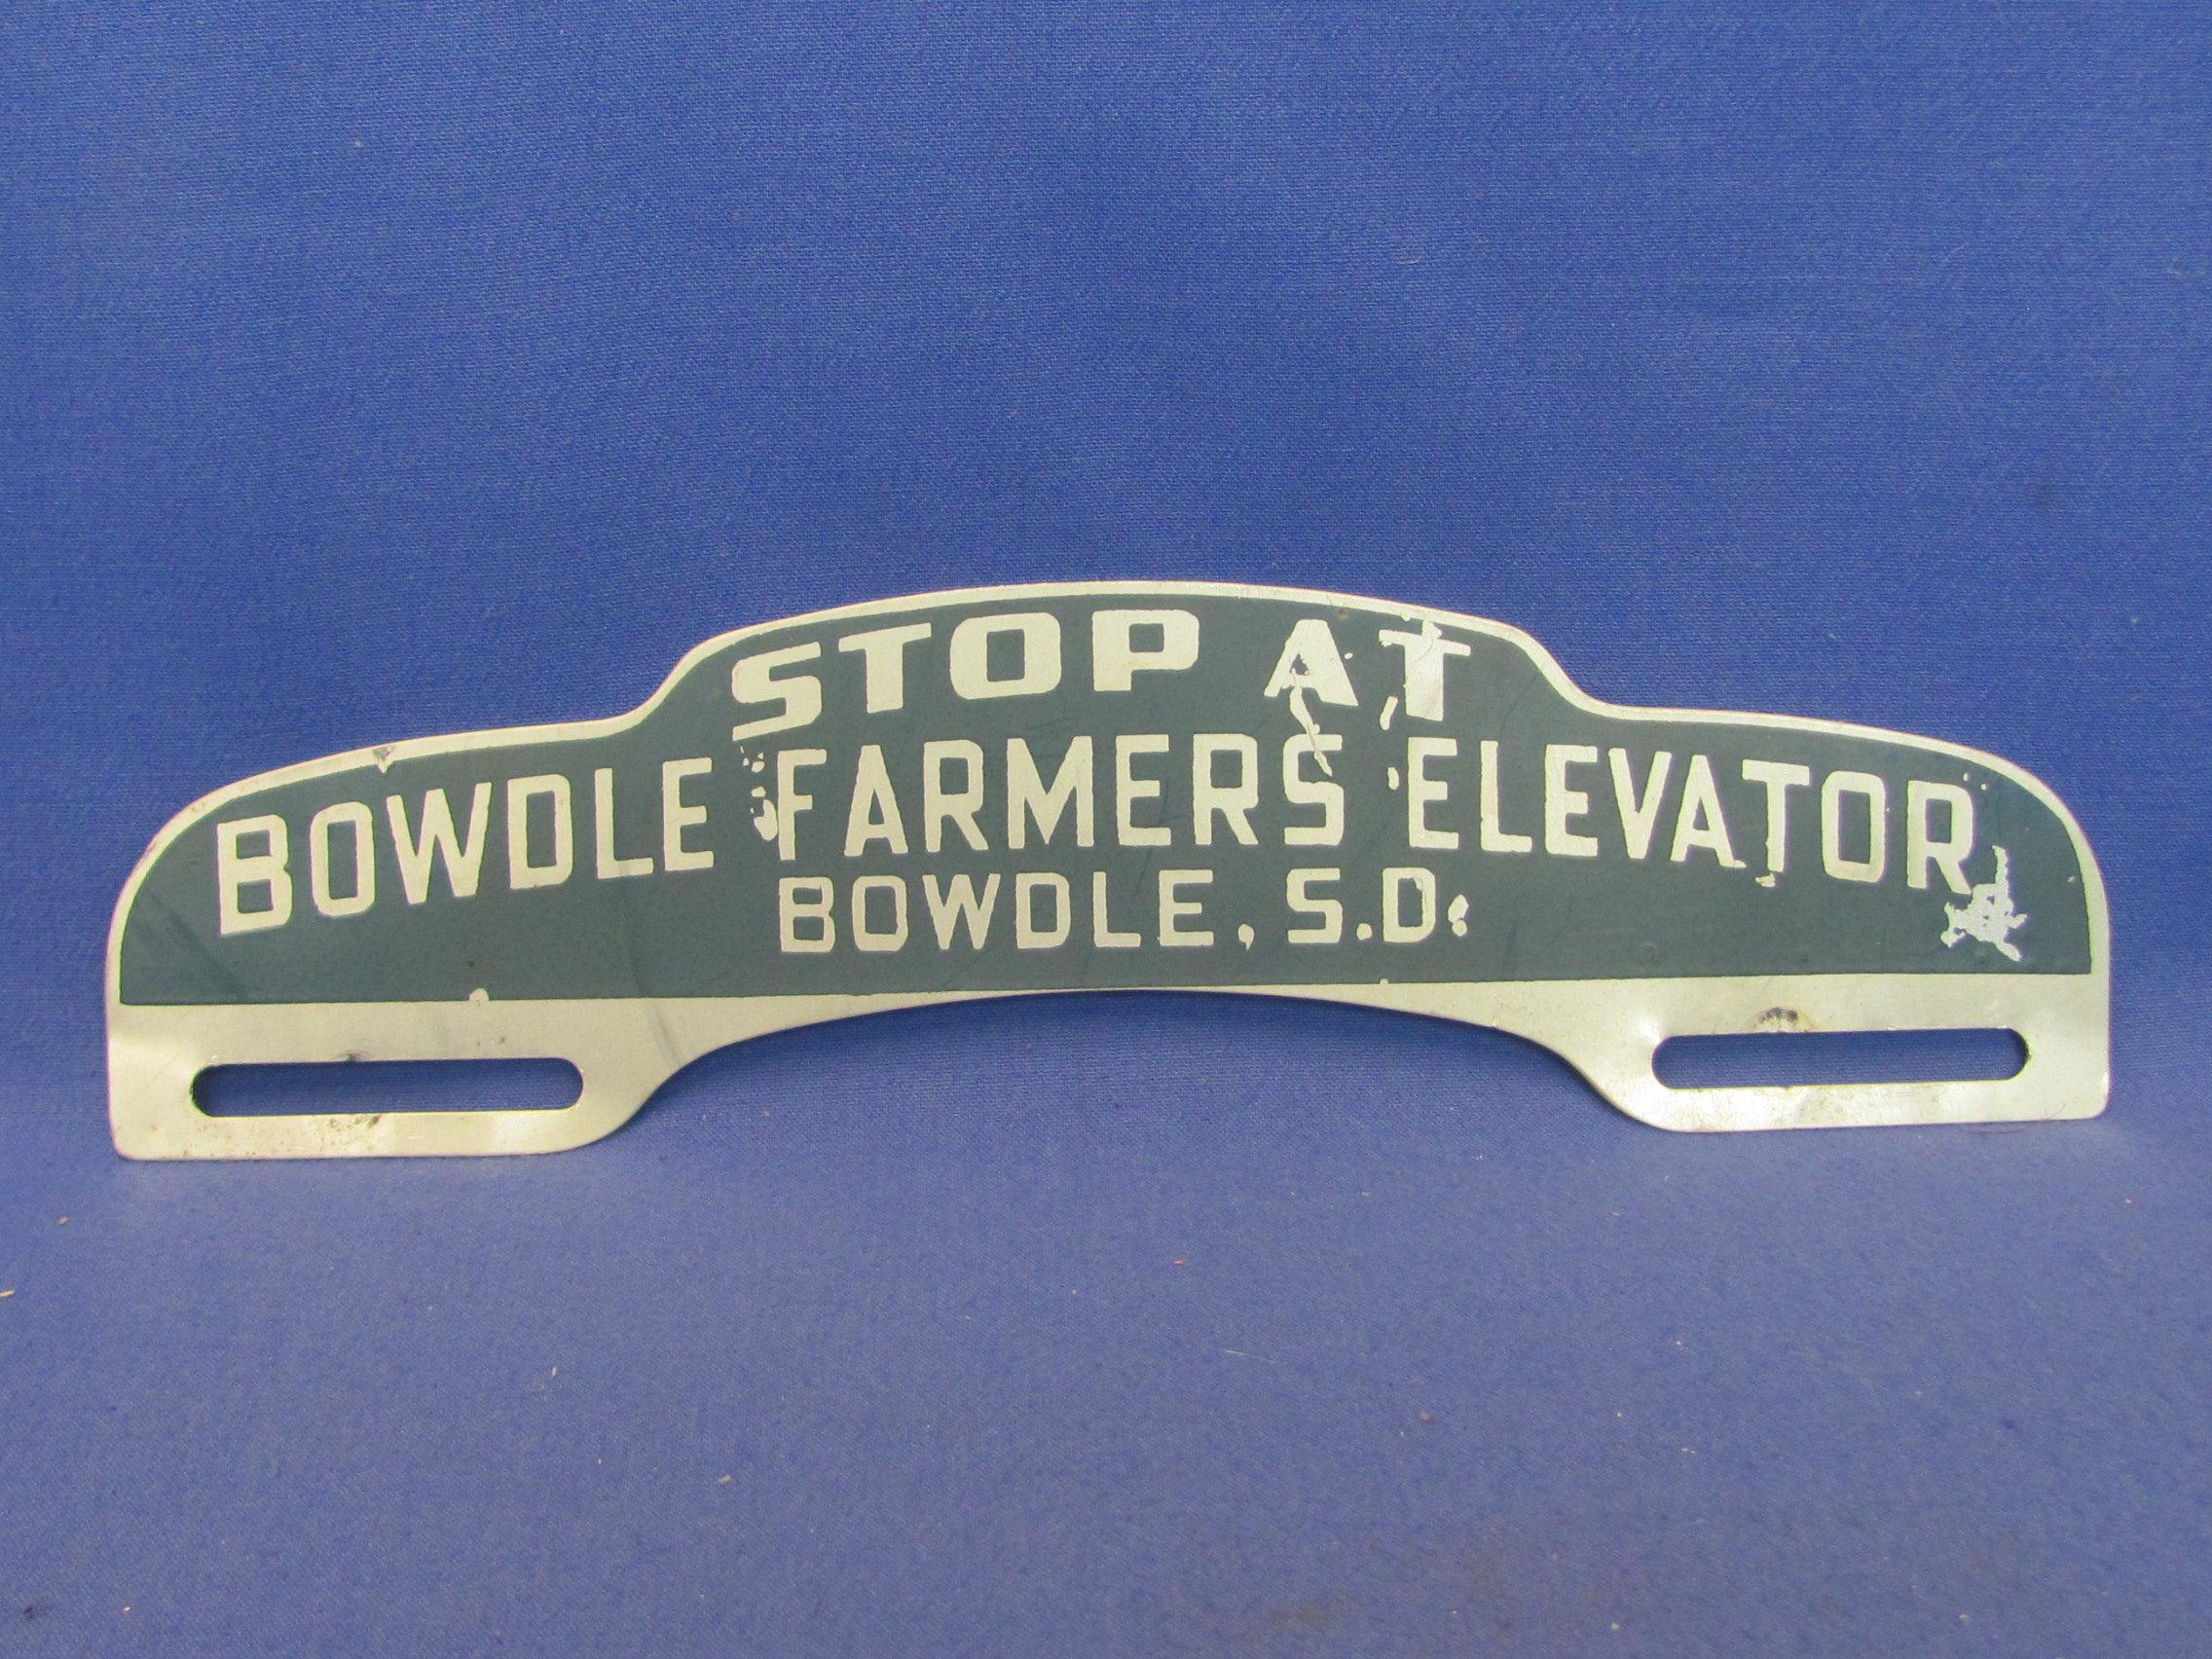 Aluminum Sign/Plague “Stop at Bowdle Farmers Elevator Bowdle, S.D.” - 10” long